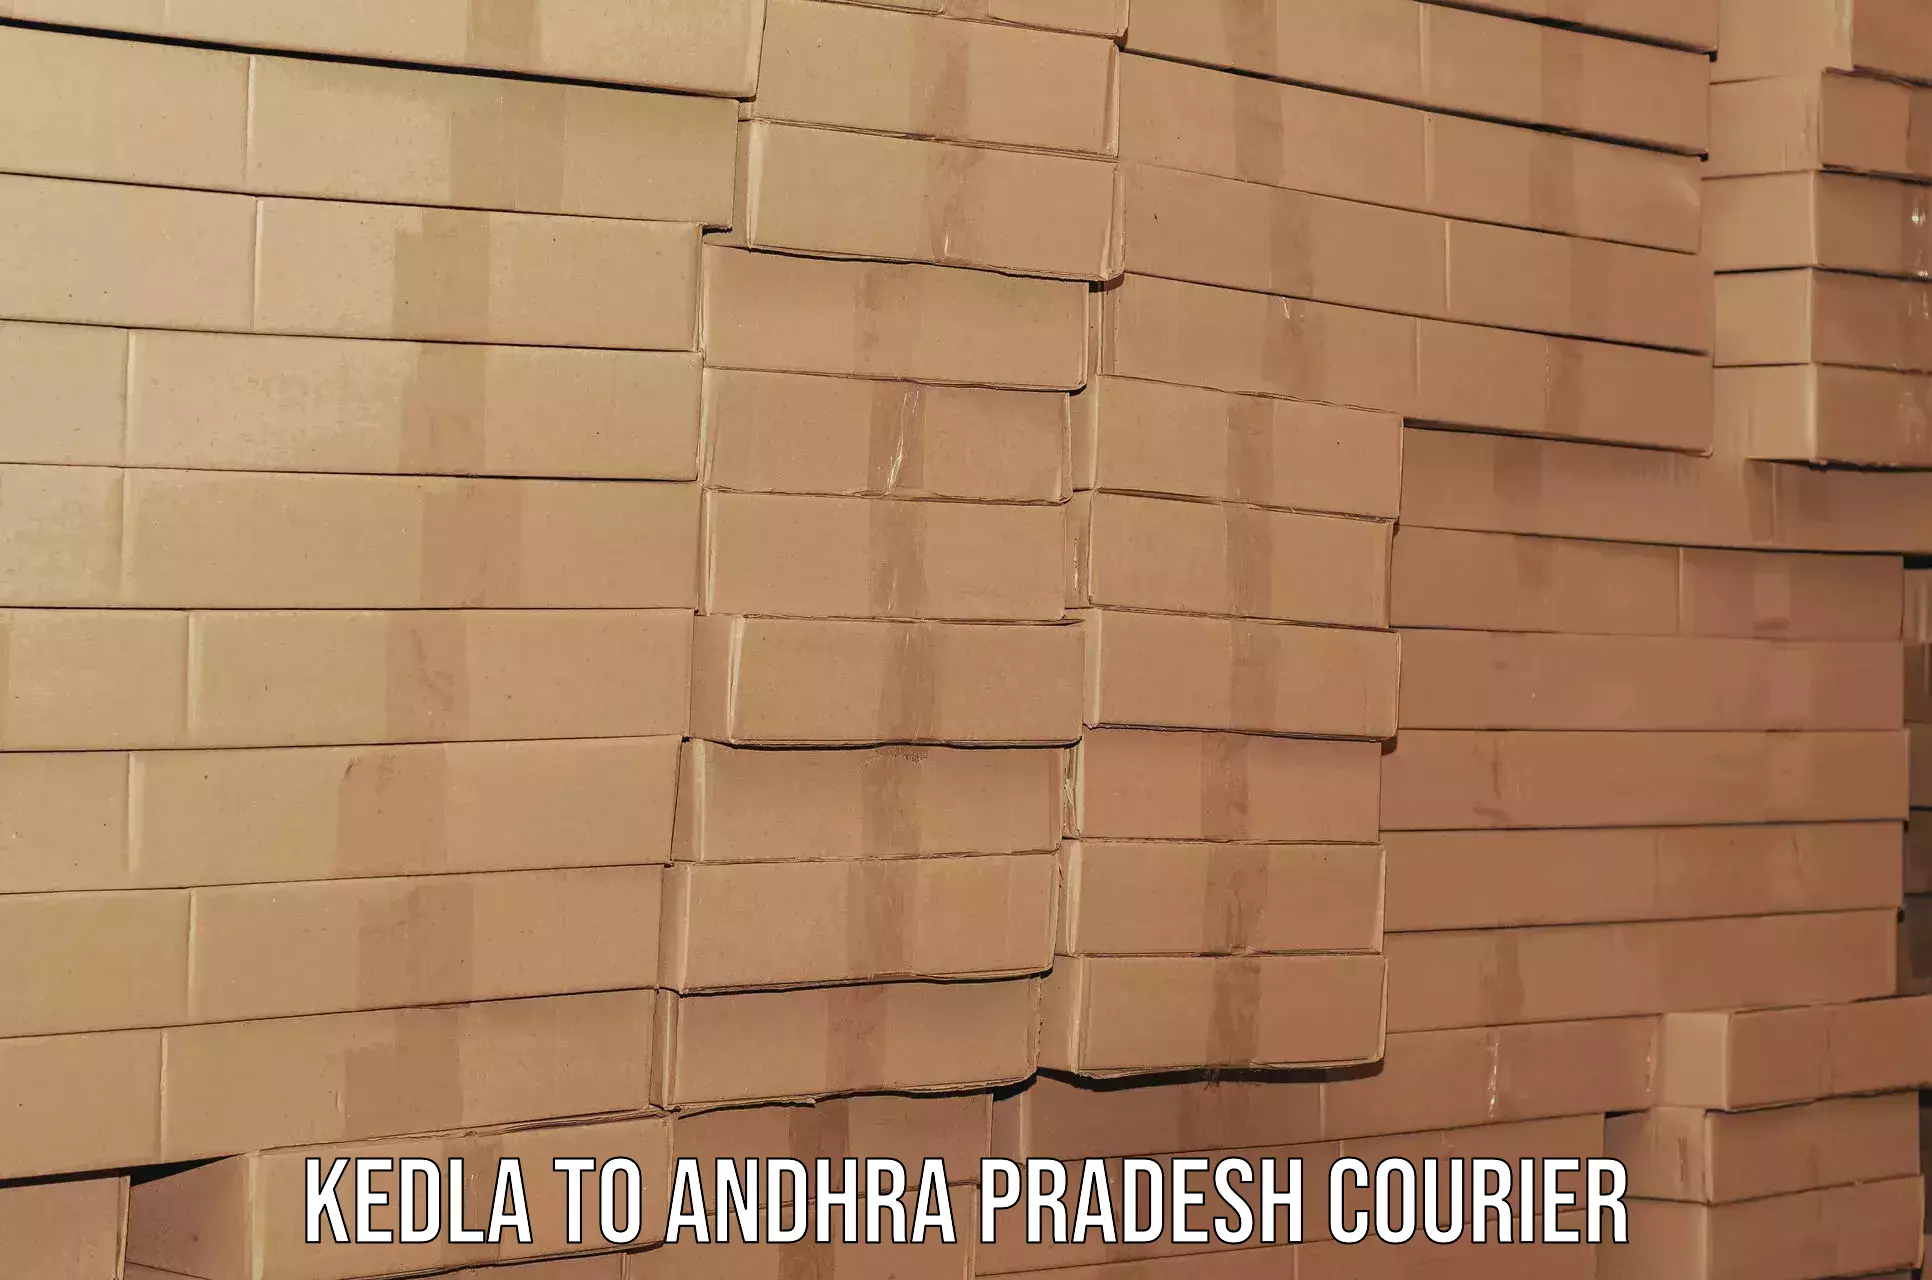 Furniture moving experts Kedla to Konduru